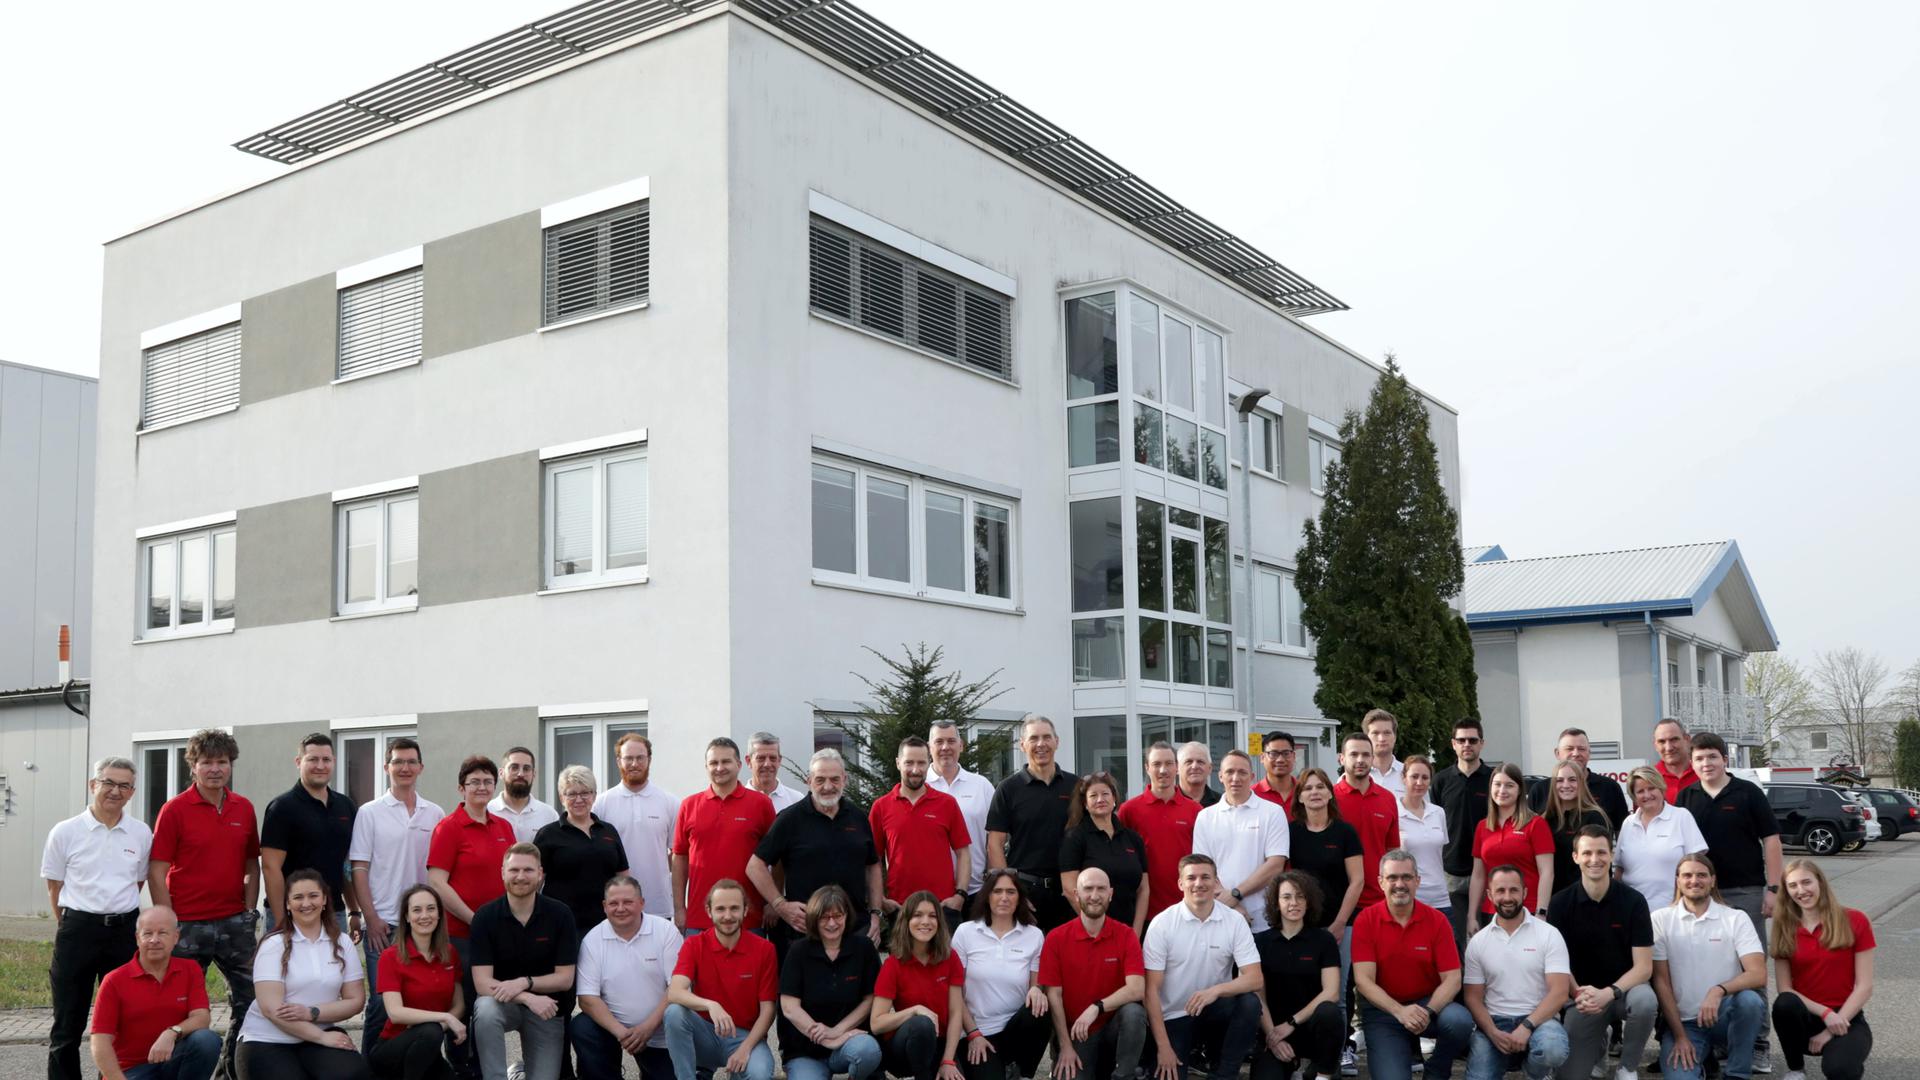 Das Team der Michael Koch GmbH vor dem Fabrikle. Das Unternehmen zählt zu den wachstumsstarken Familienunternehmen in Ubstadt-Weiher.